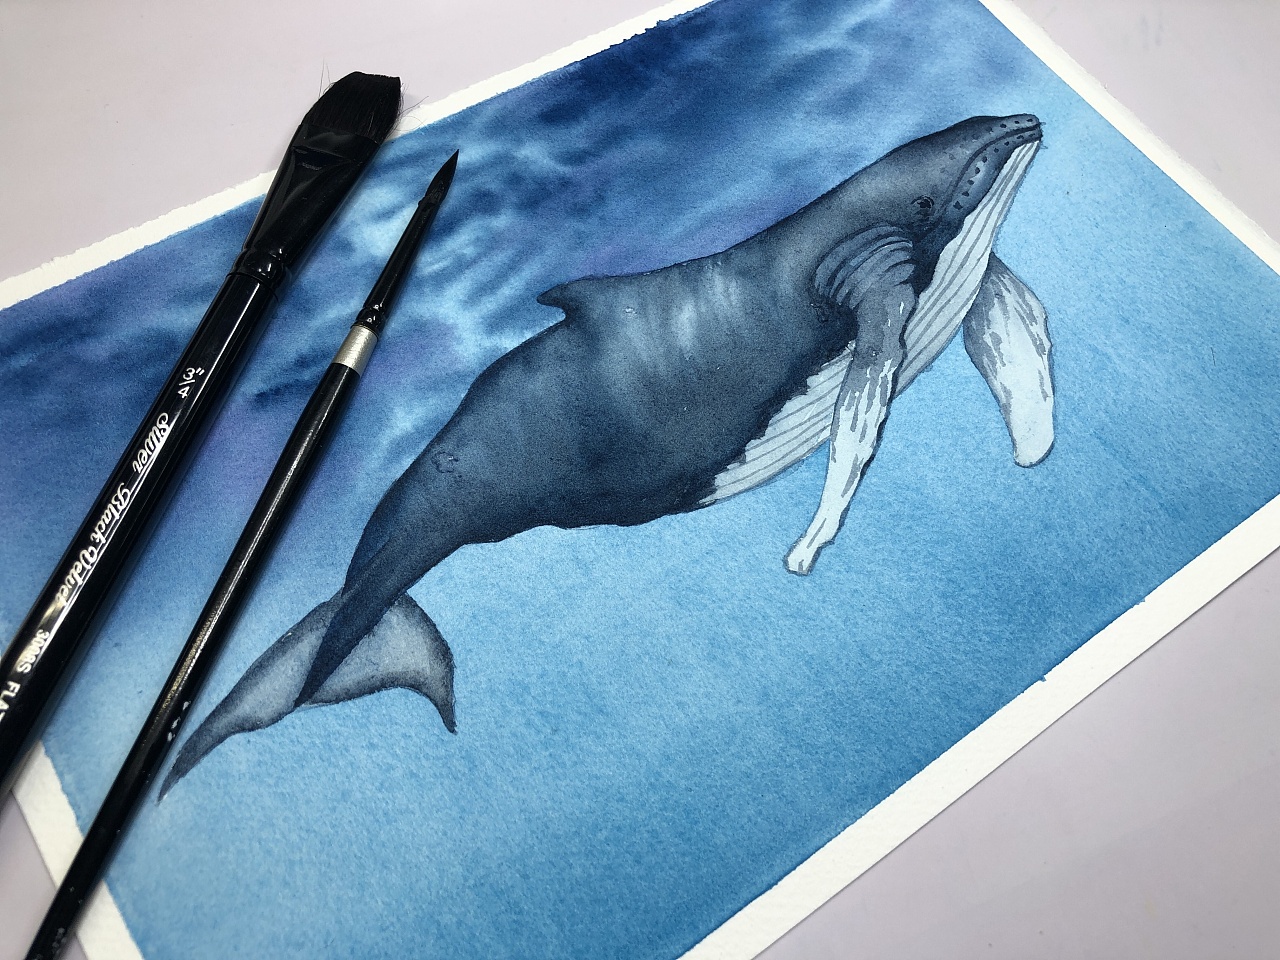 简鲸水彩纸 简鲸水彩纸图片大全 - 第 2 - 水彩迷